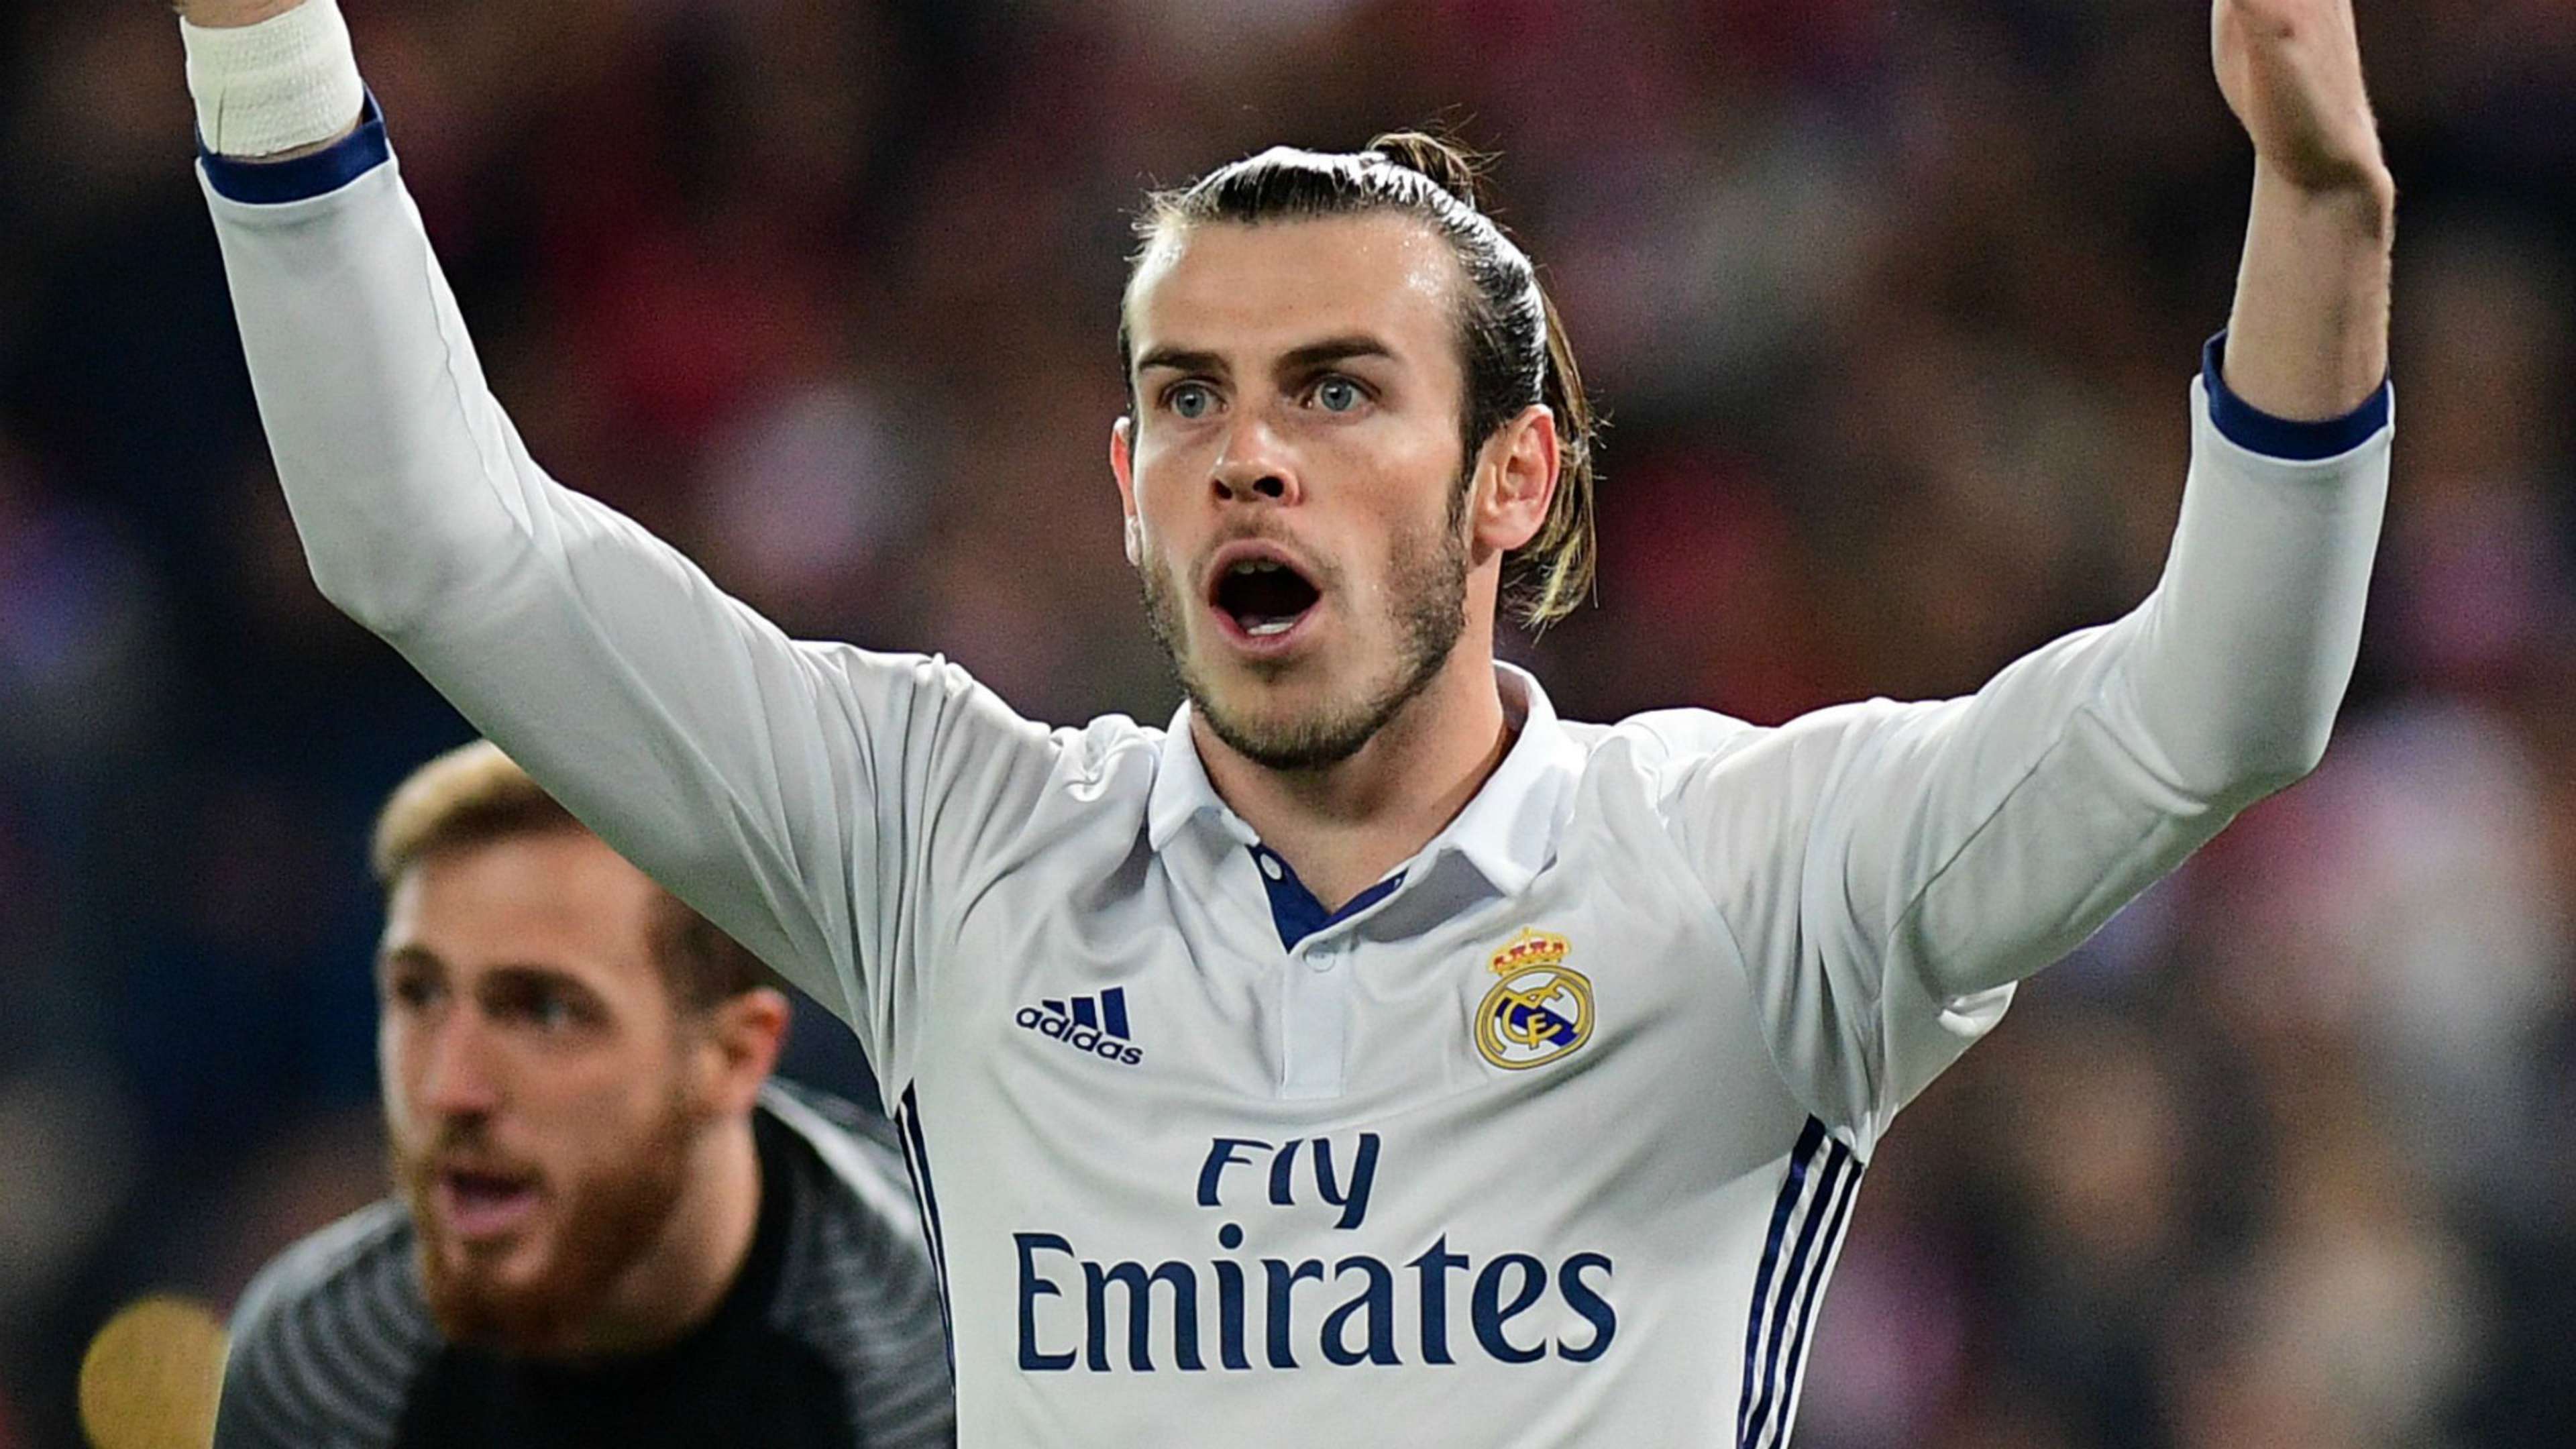 UEFA Team of the Year Gareth Bale